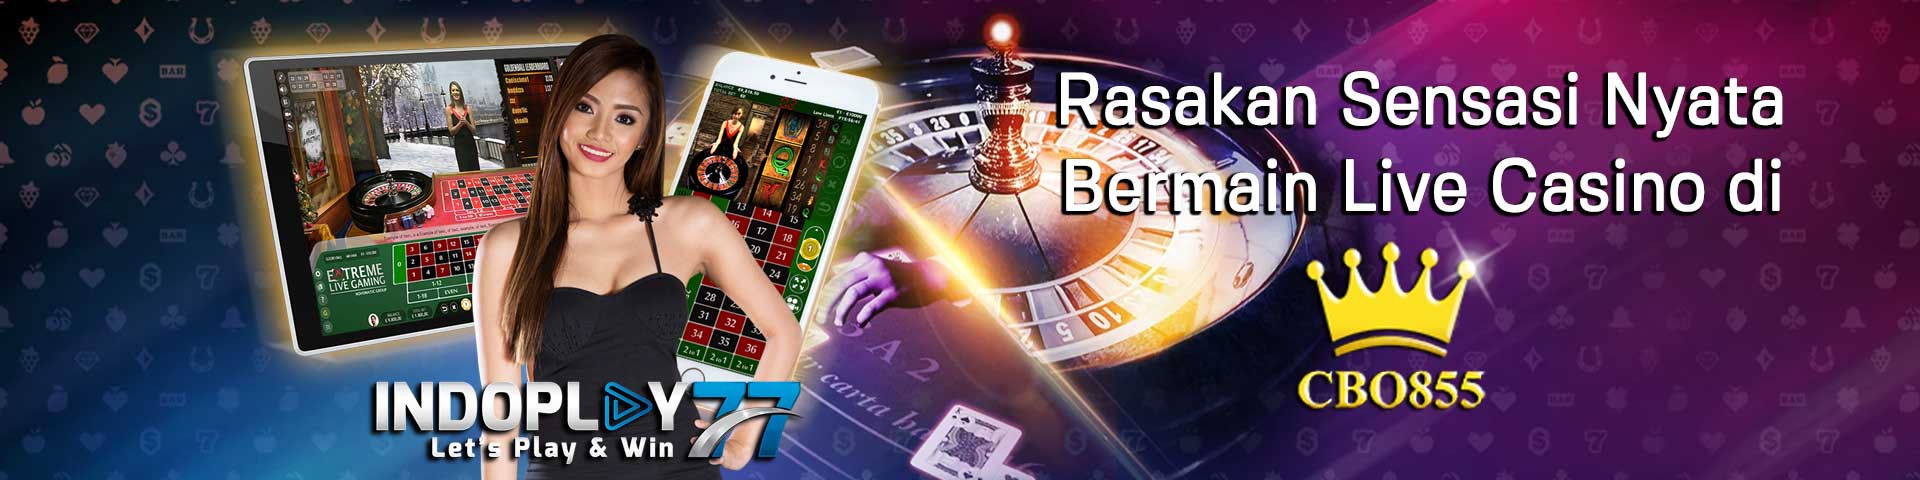 banner-promo-live-casino-online-agen-cbo855-indonesia